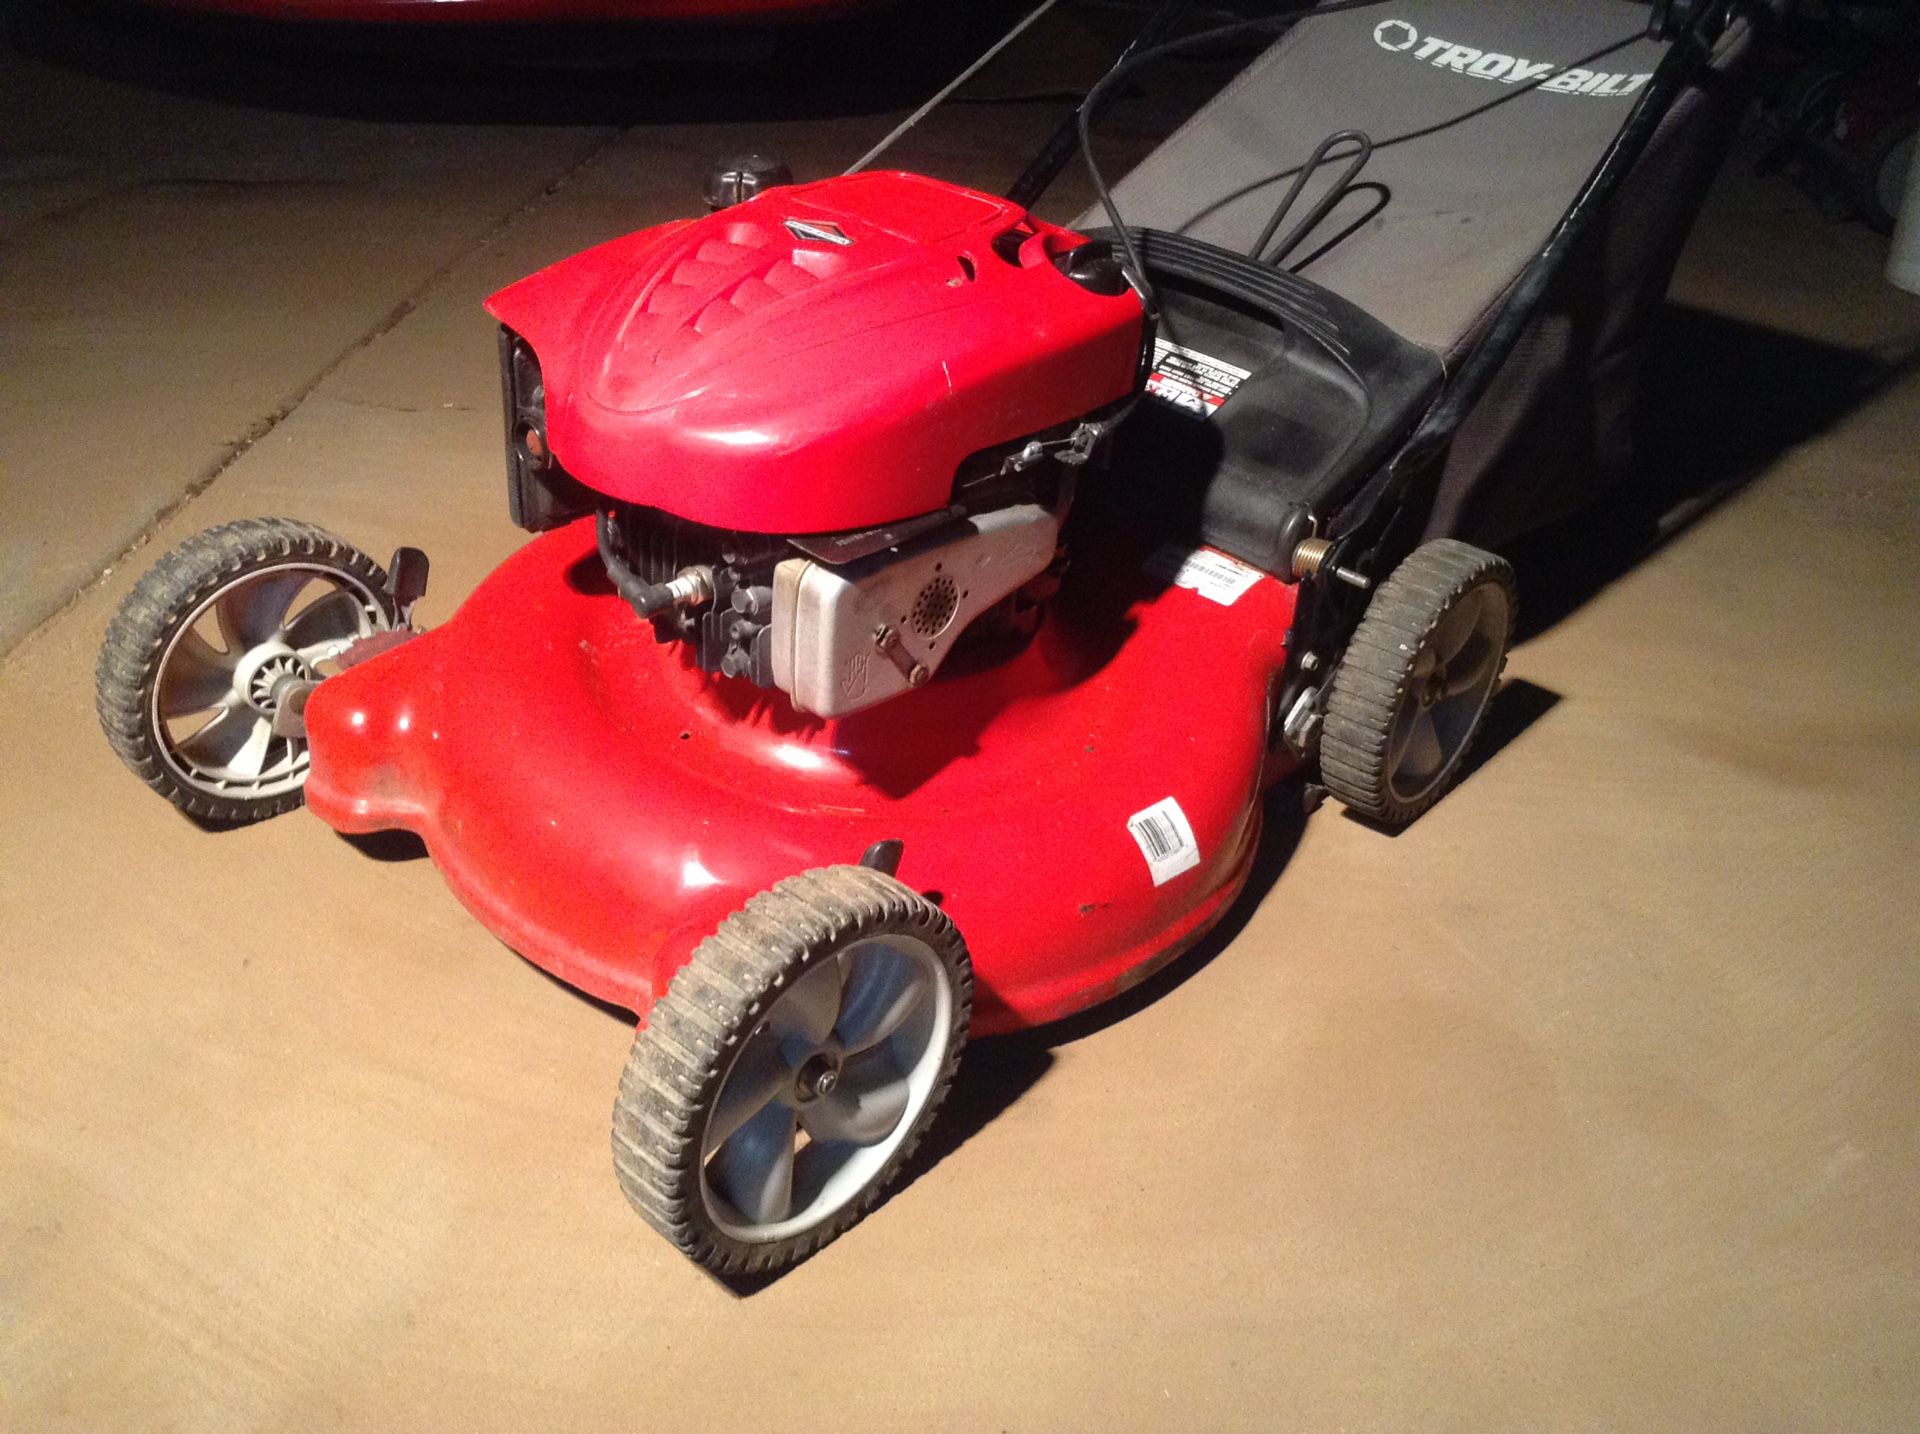 Troy Bilt 6.75 hp Lawn Mower